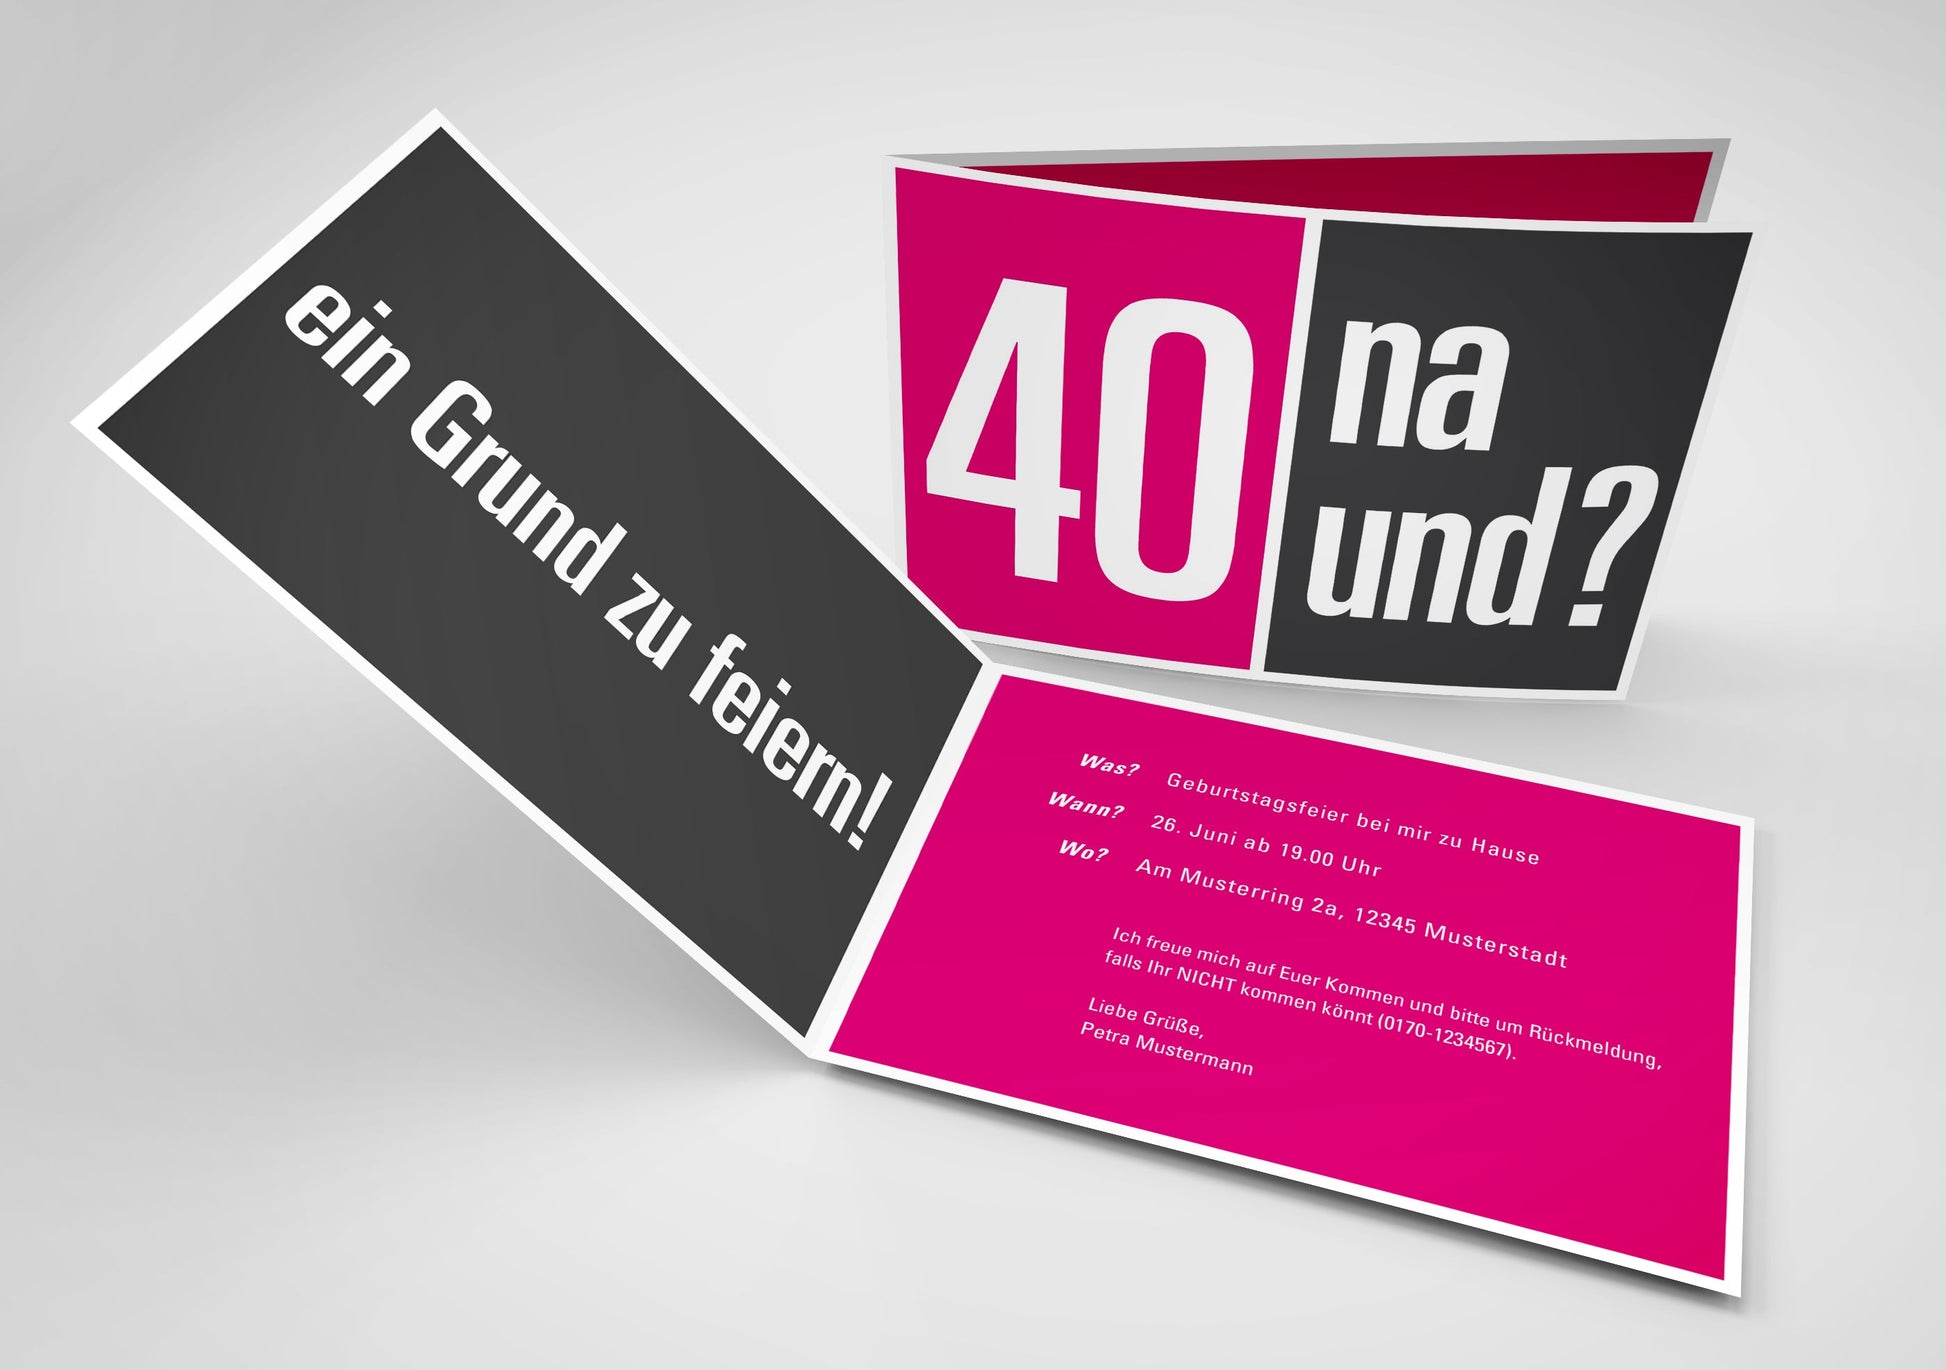 Einladung zum 40. Geburtstag: 40 na und? Individuelle Einladung